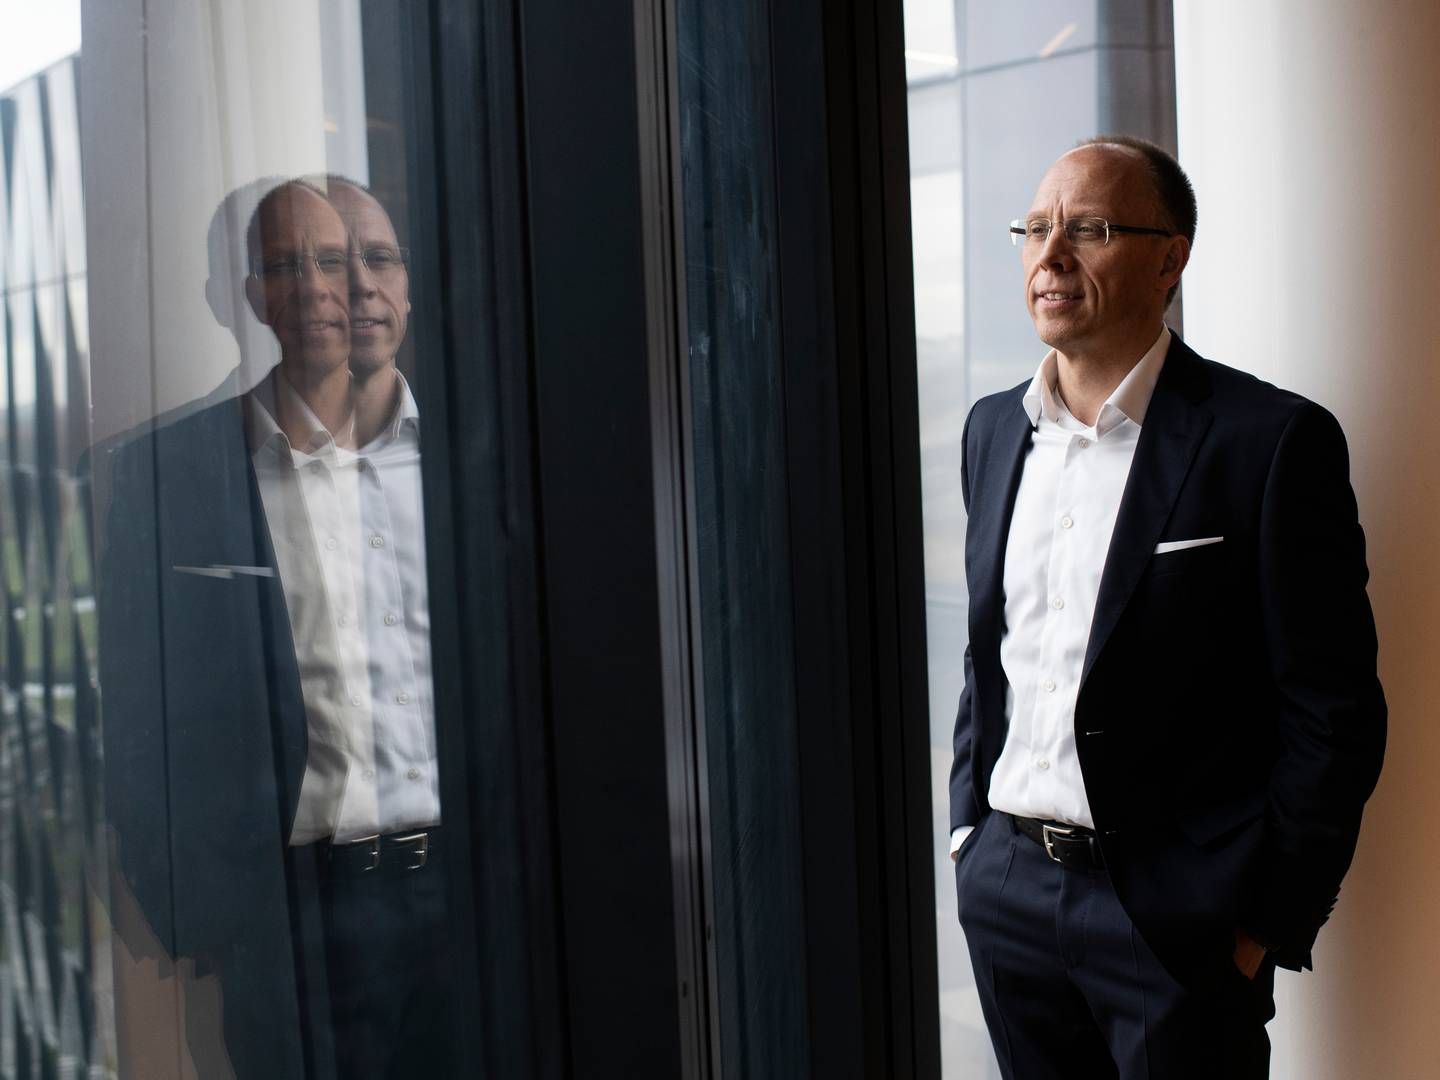 Frank Vang-Jensen er topchef for Nordea, der torsdag har præsenteret et overskud for tredje kvartal på godt 10 mia. kr. | Foto: Gregers Tycho/Ritzau/Ritzau Scanpix